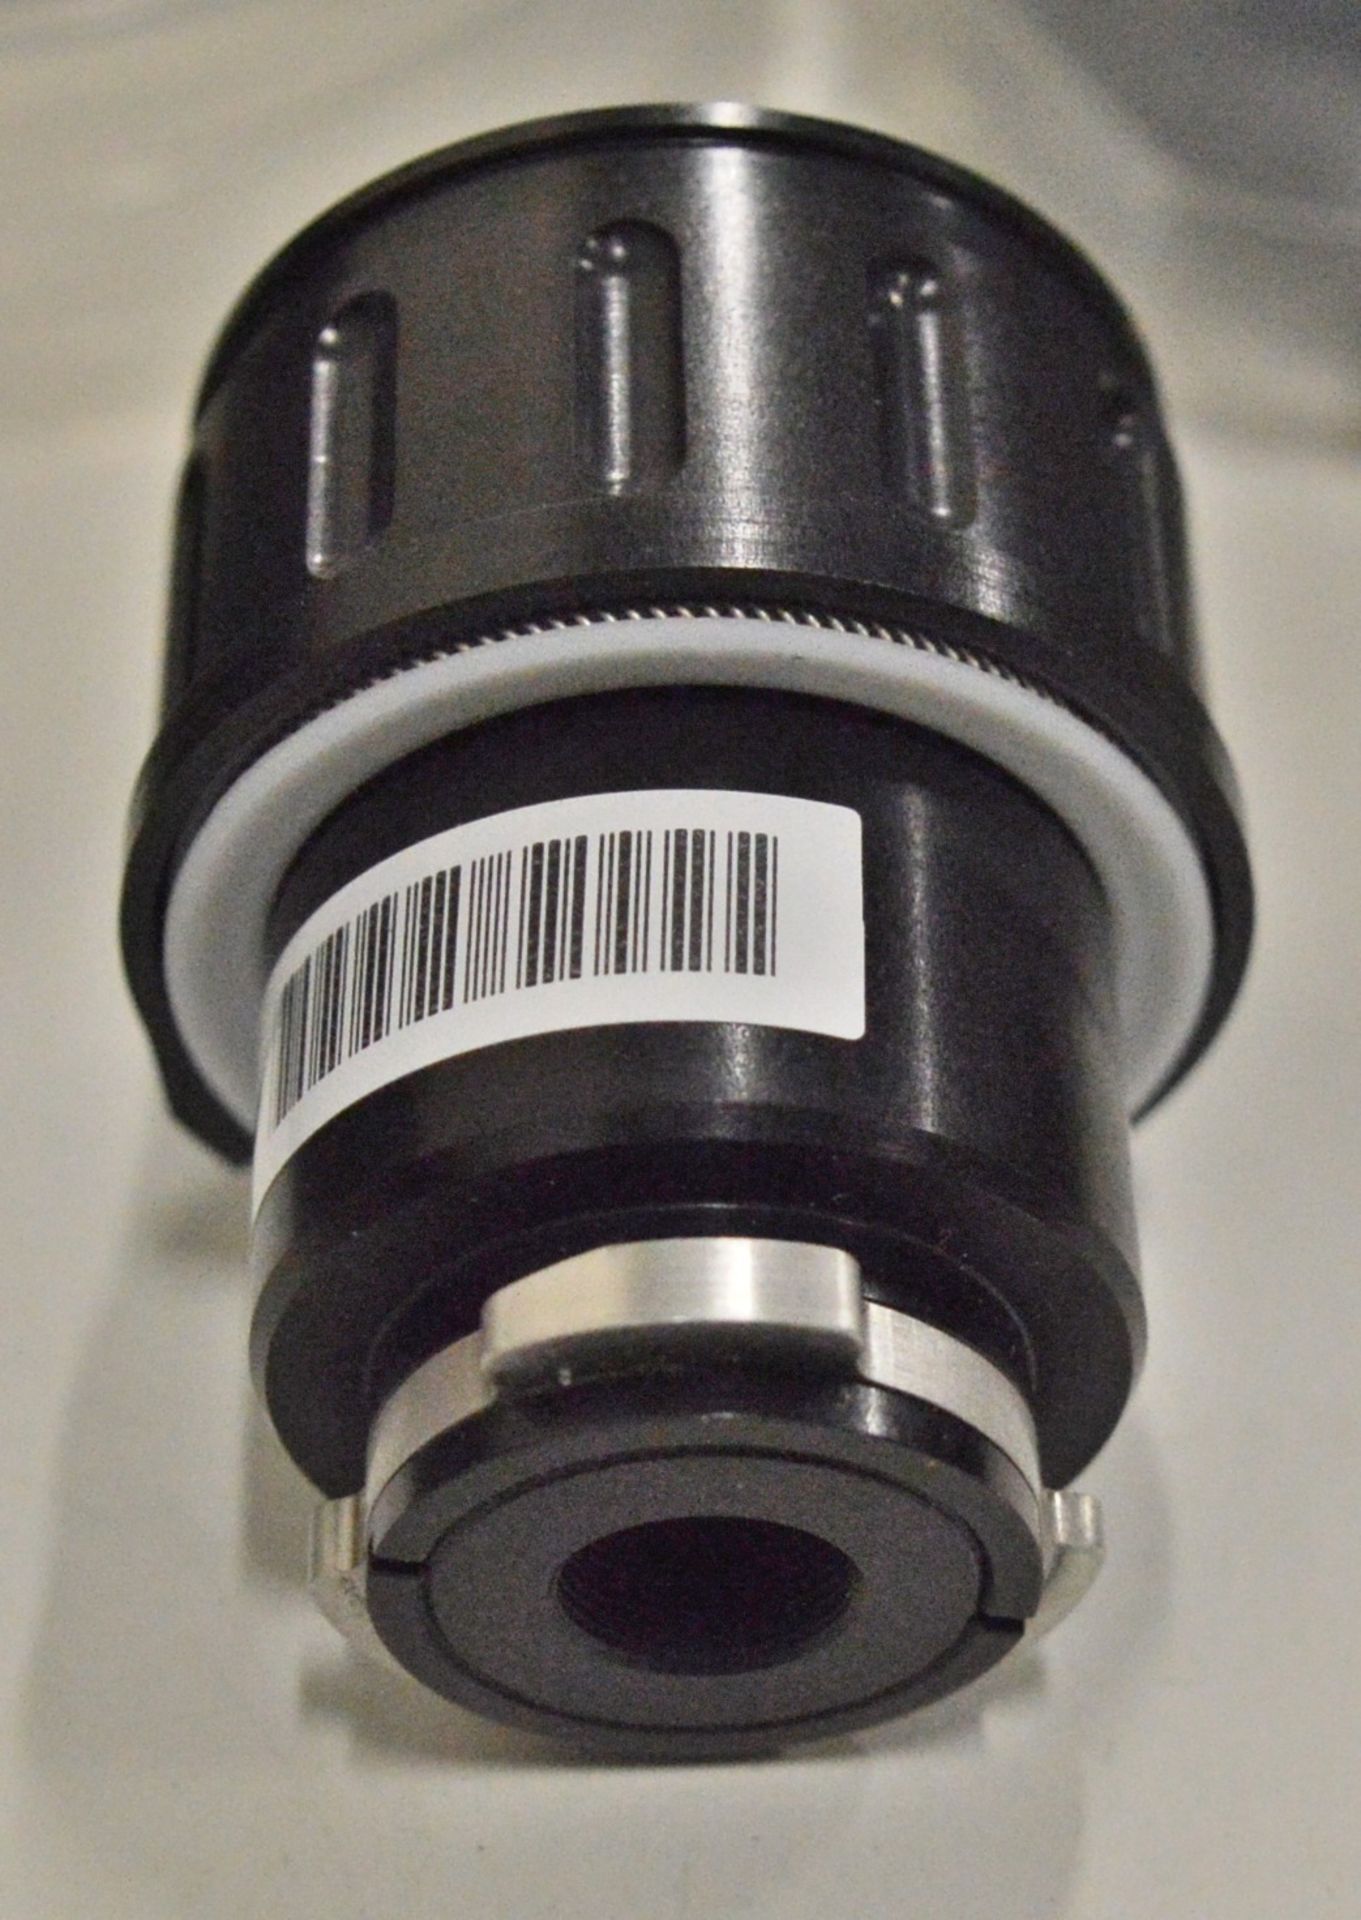 J.T.I 41348-0003 30mm 3-5um F/4.0 Lens Camera Lens - No Markings/Model/Make - Image 3 of 6